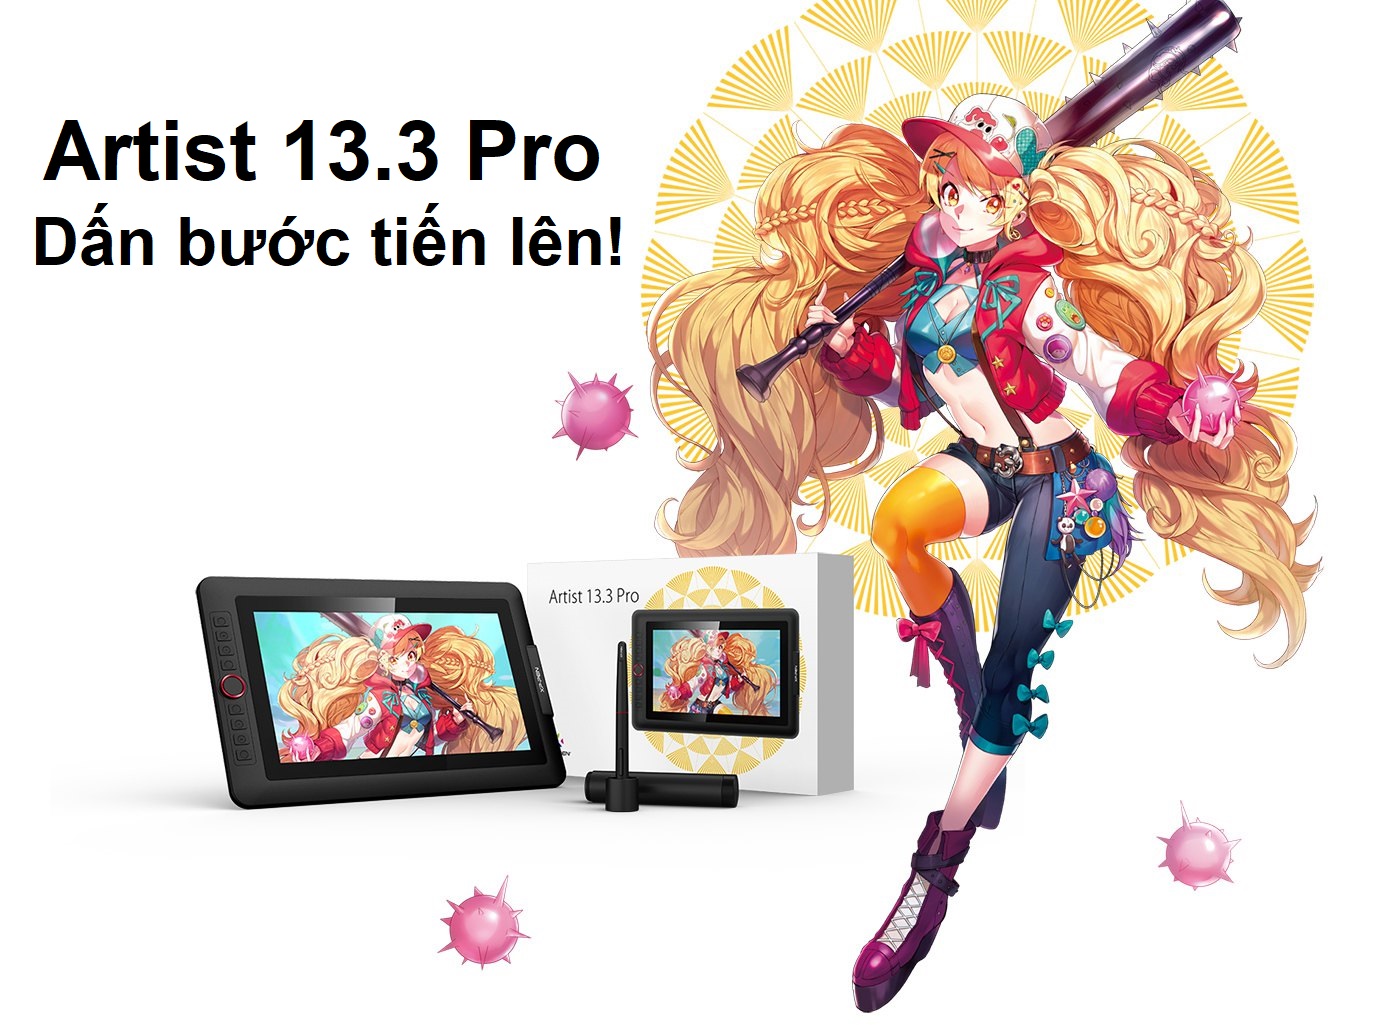 Bảng Vẽ Màn Hình XP-Pen Artist 13.3 Pro fullHD 91%Adobe RGB Lực Nhấn 8192 Cảm Ứng Nghiêng (Tặng Găng Tay Họa Sĩ Và Đế Nghiêng) - Hàng Chính Hãng